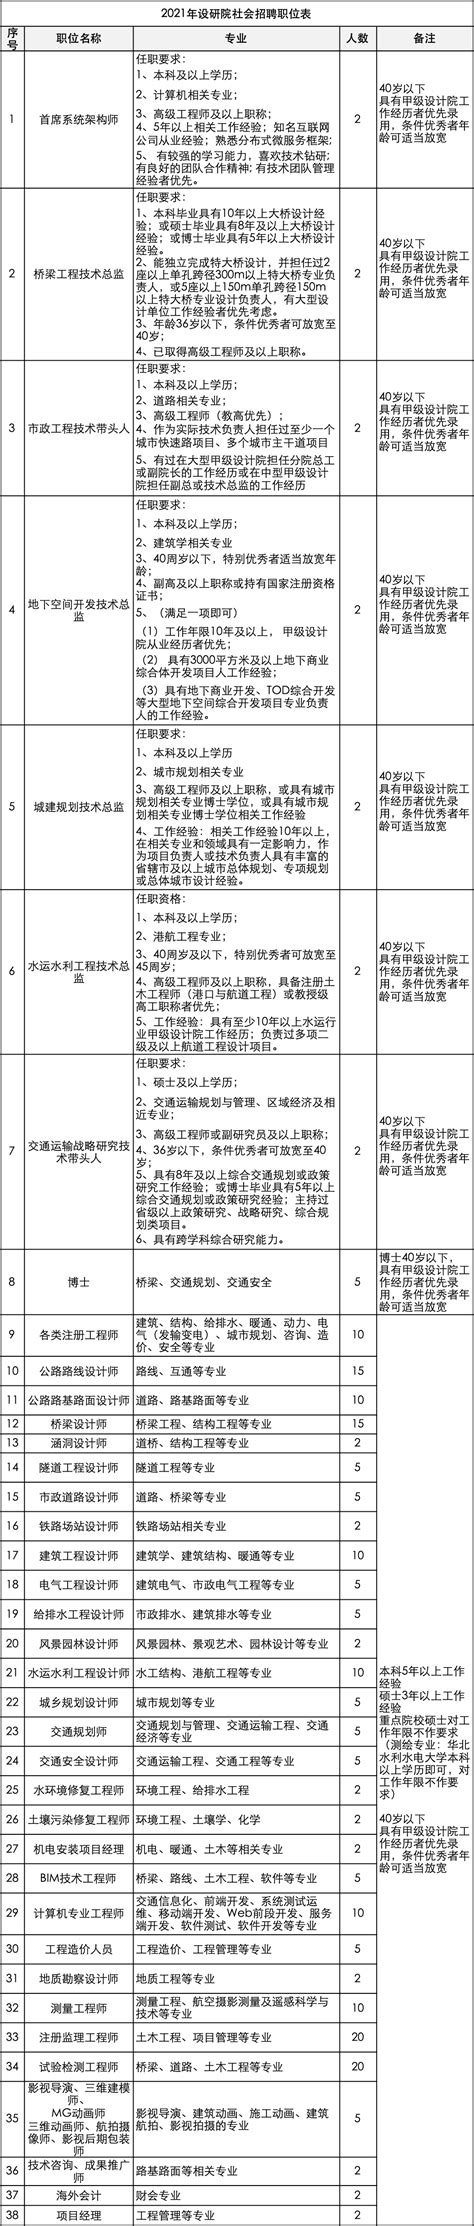 郑州市政府发布重要通知-大河新闻